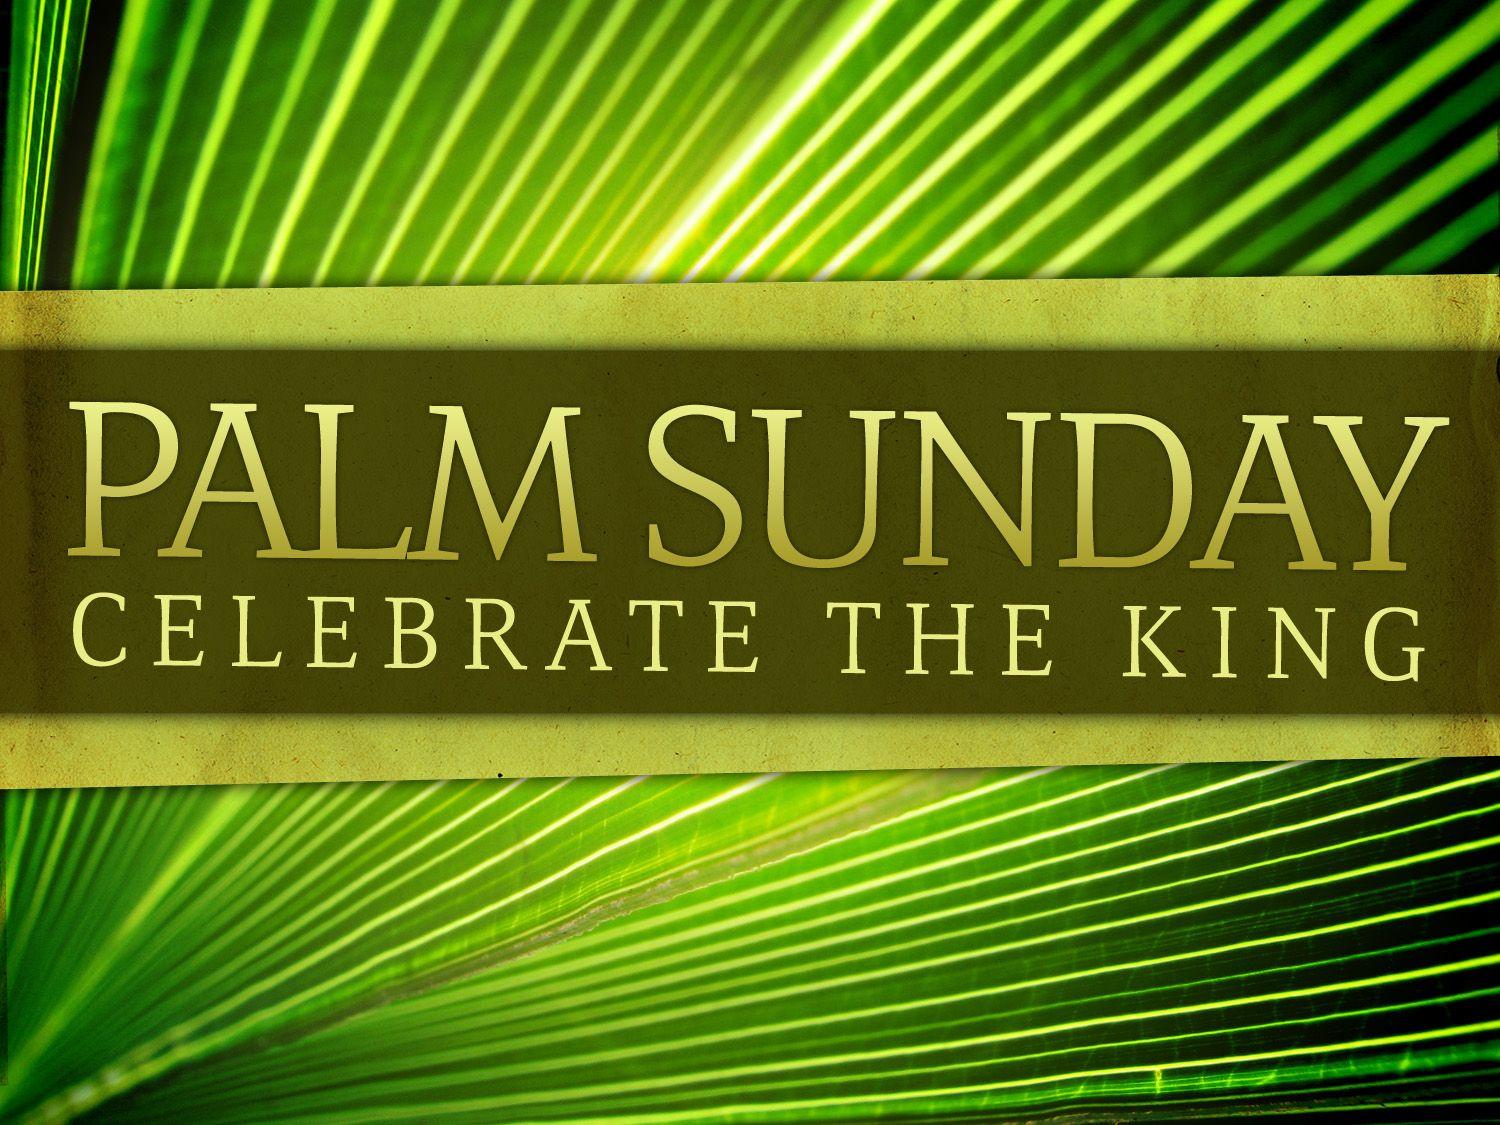 Palm Sunday. Happy palm sunday, Psalm sunday, Sunday image